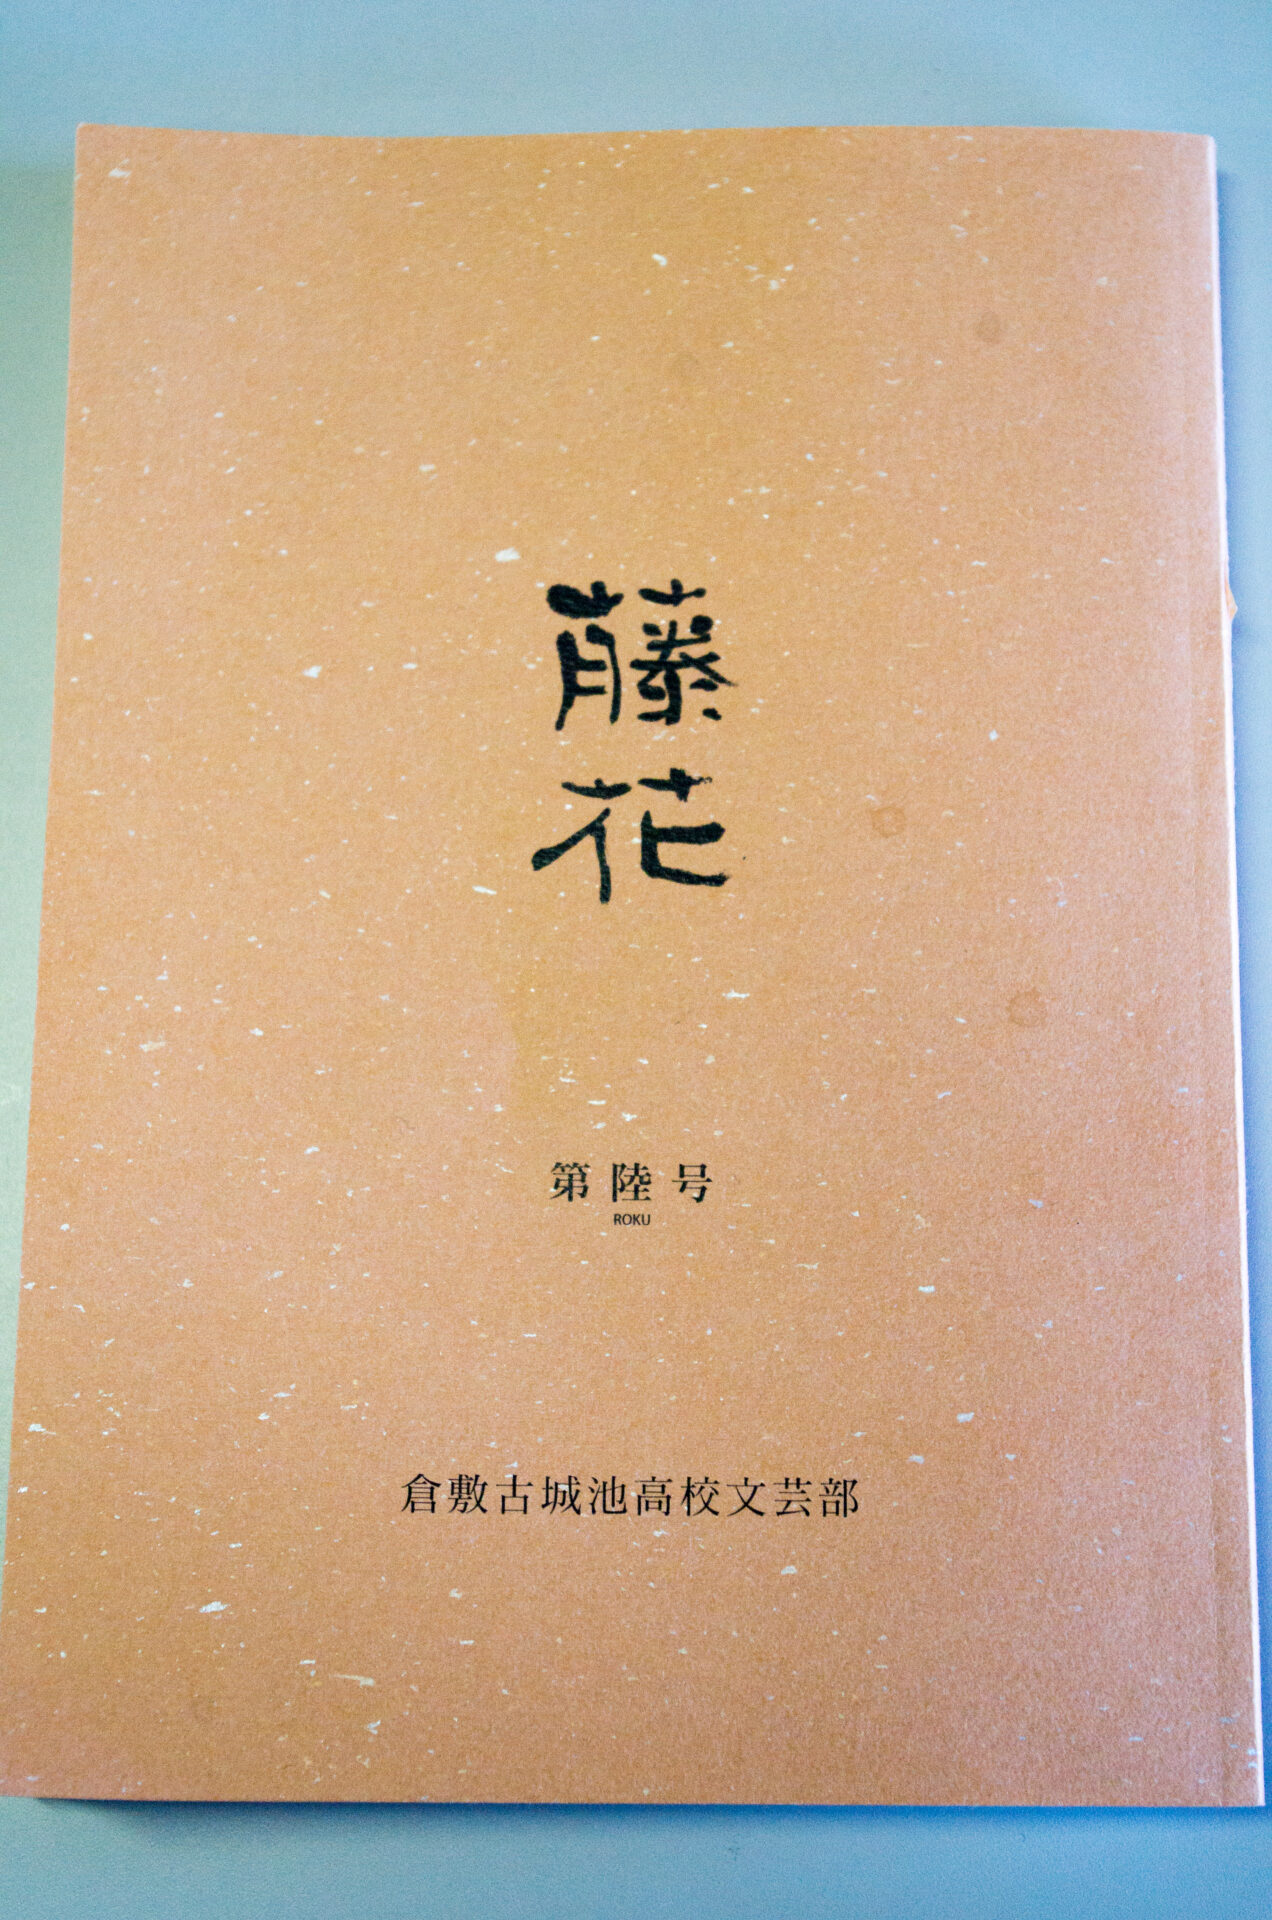 蟻塚さんが高校時代に執筆した薄田泣菫文芸評論が収められた「藤花」